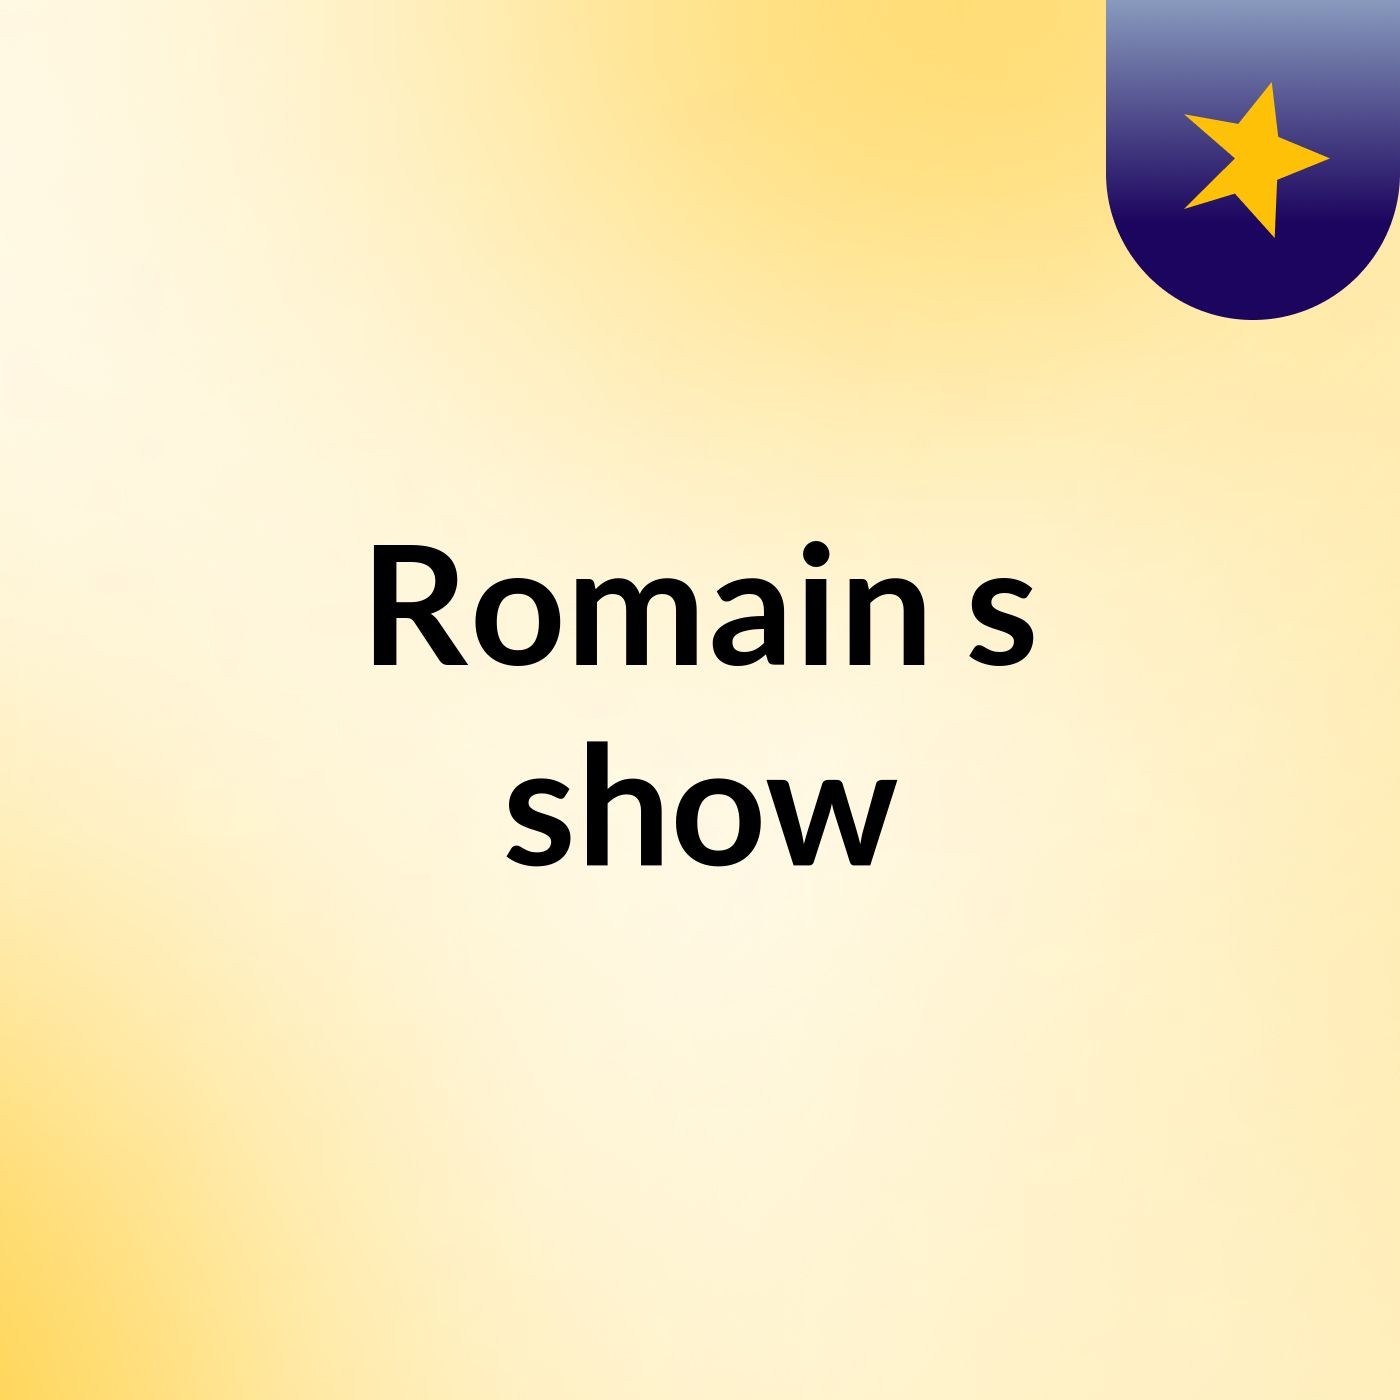 Romain's show